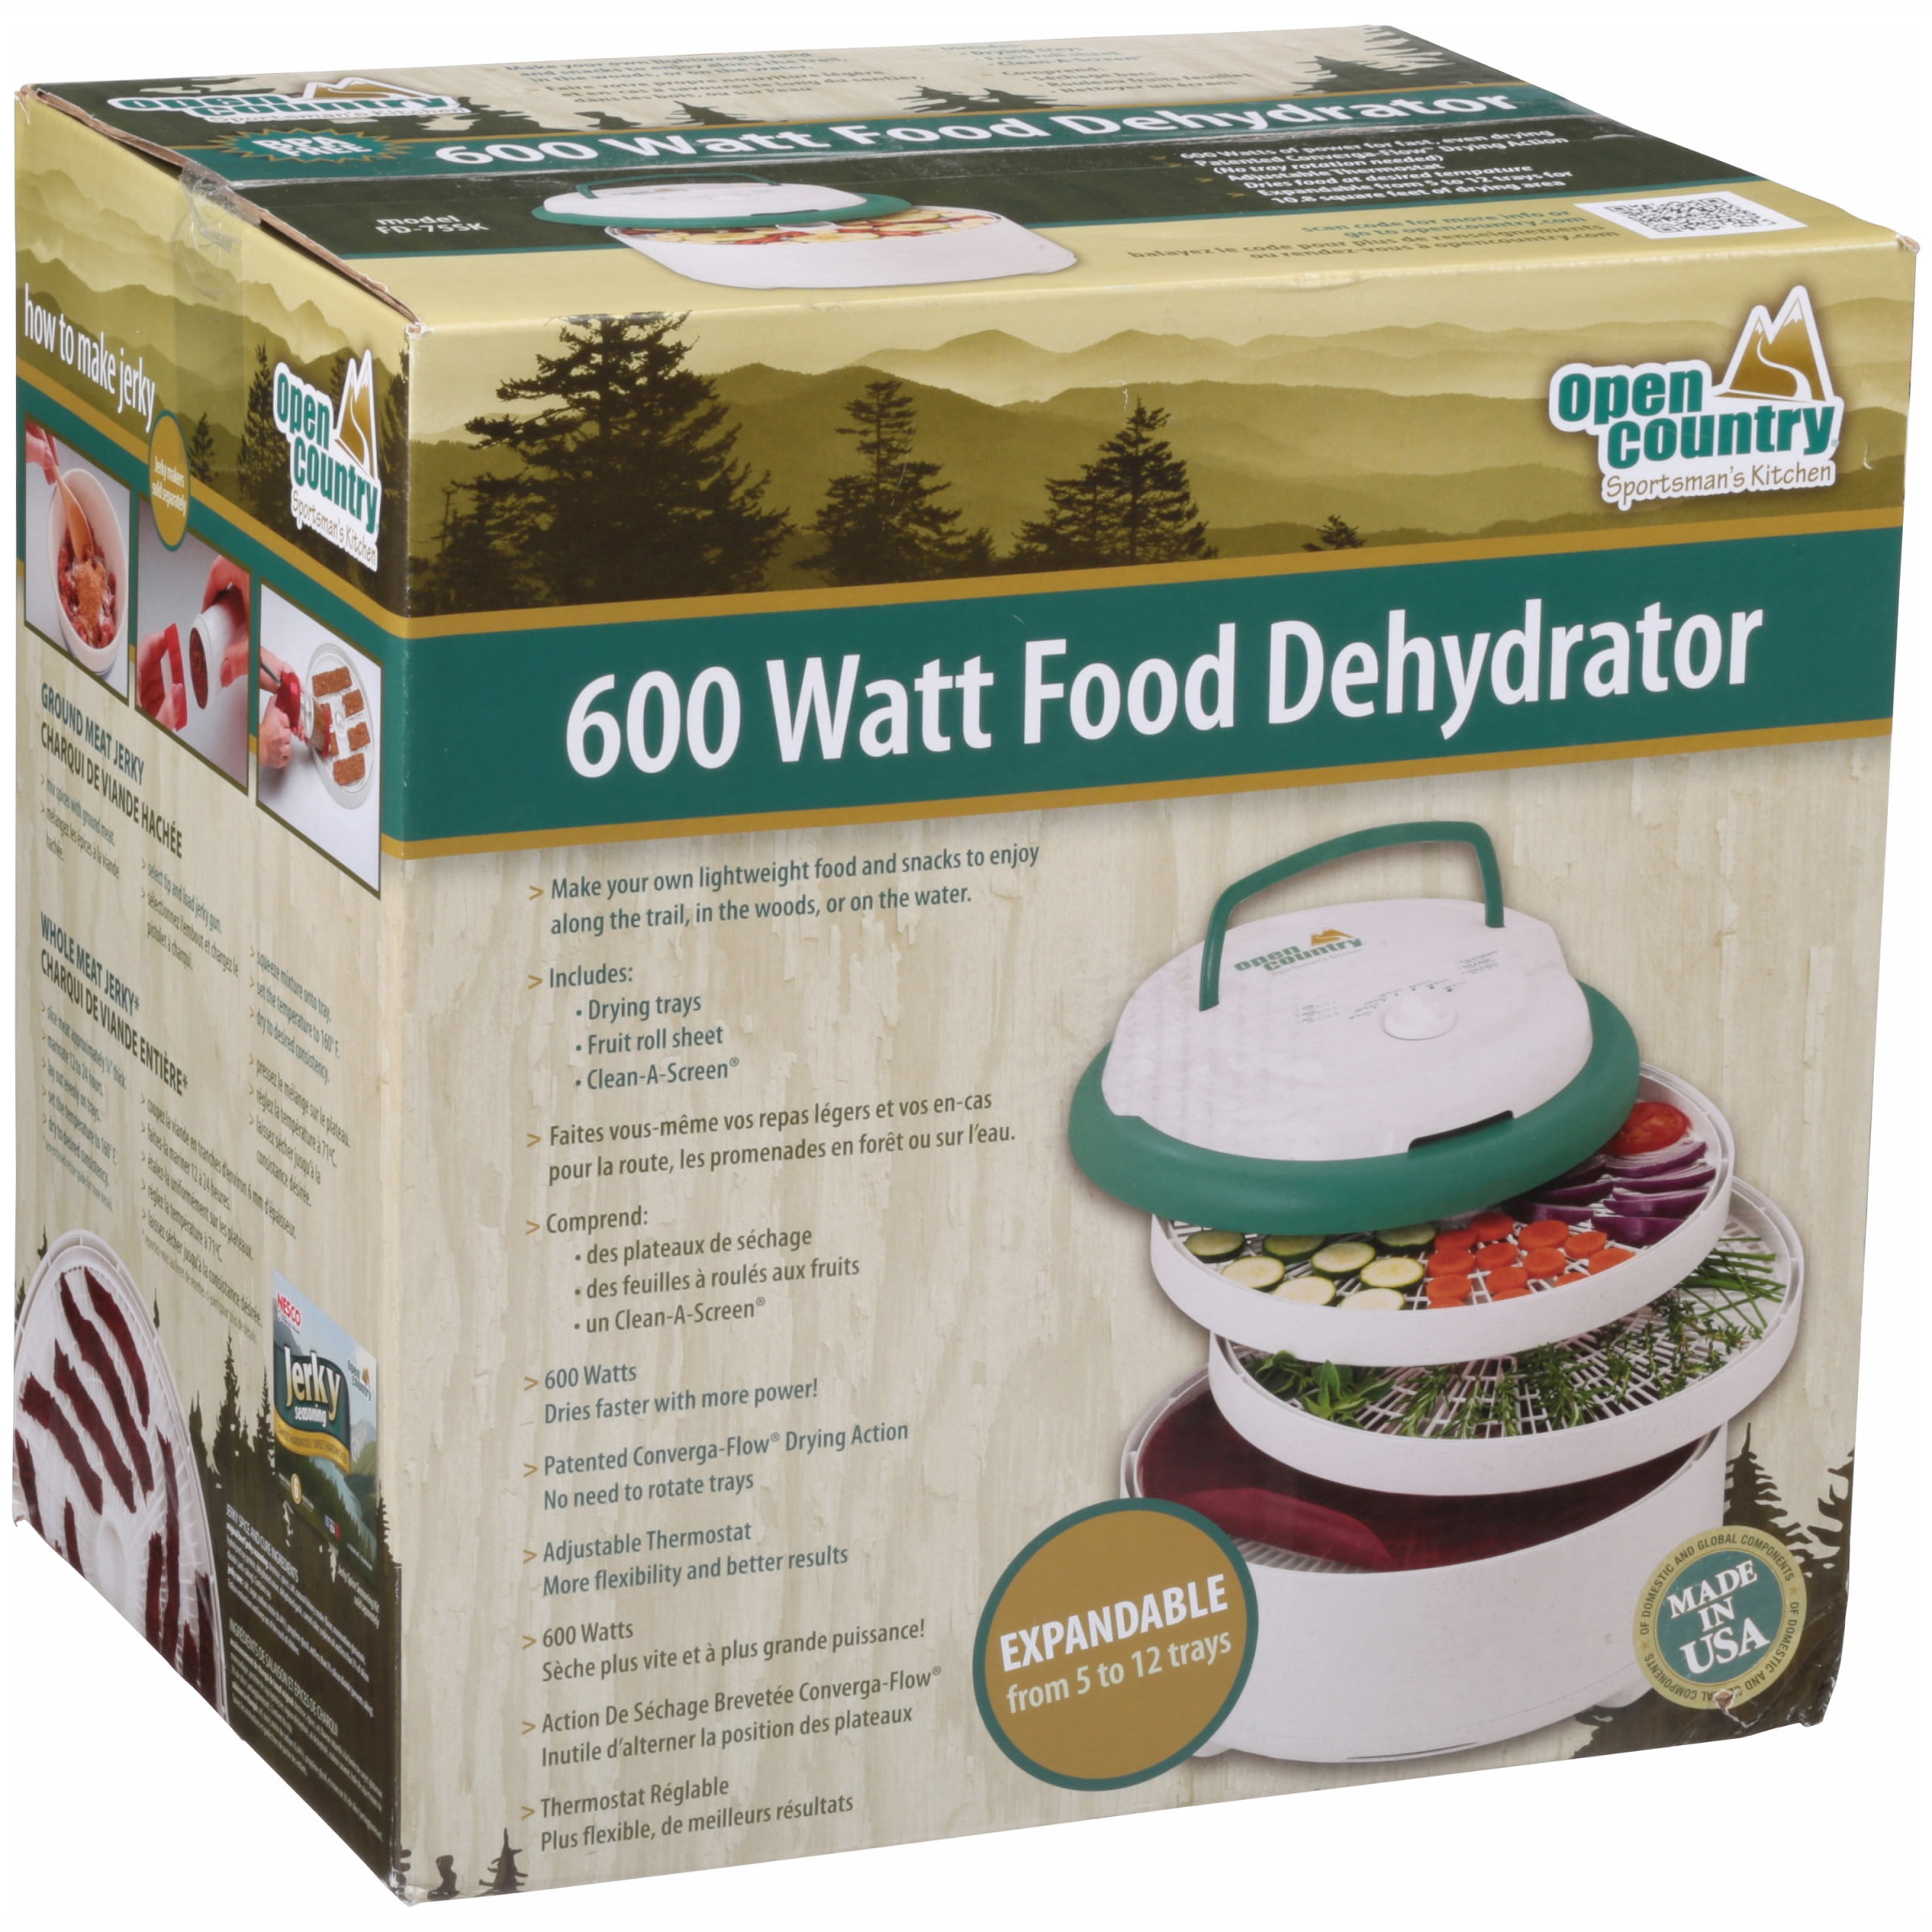 Open Country Sportsman's Kitchen 700 Watt Food Dehydrator for